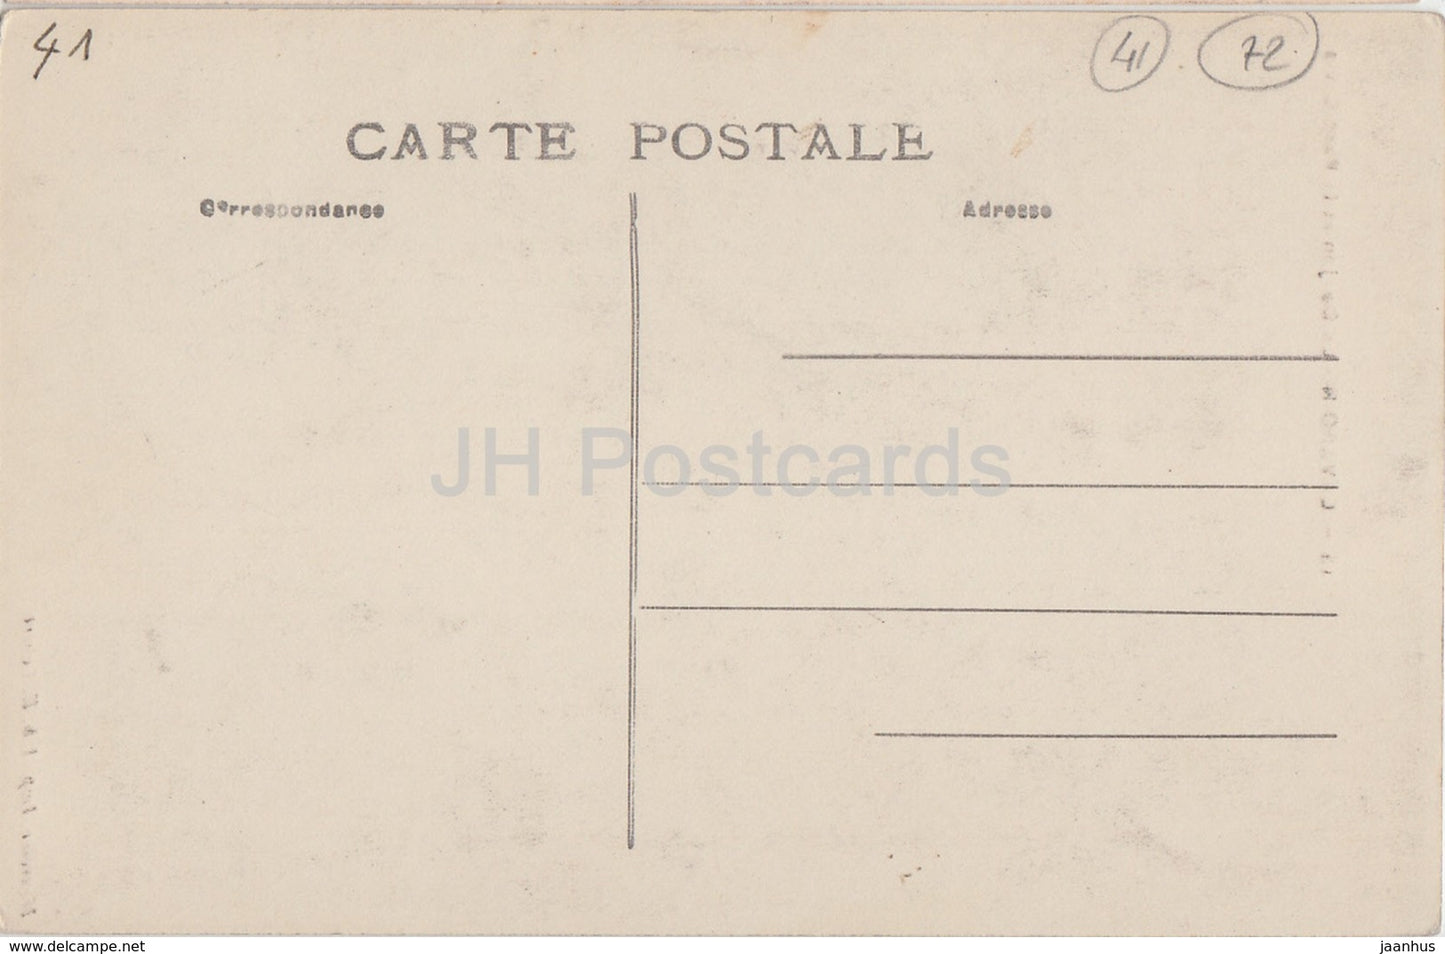 Lavardin - Le Donjon et le Pont Levis - 15 - old postcard - France - unused